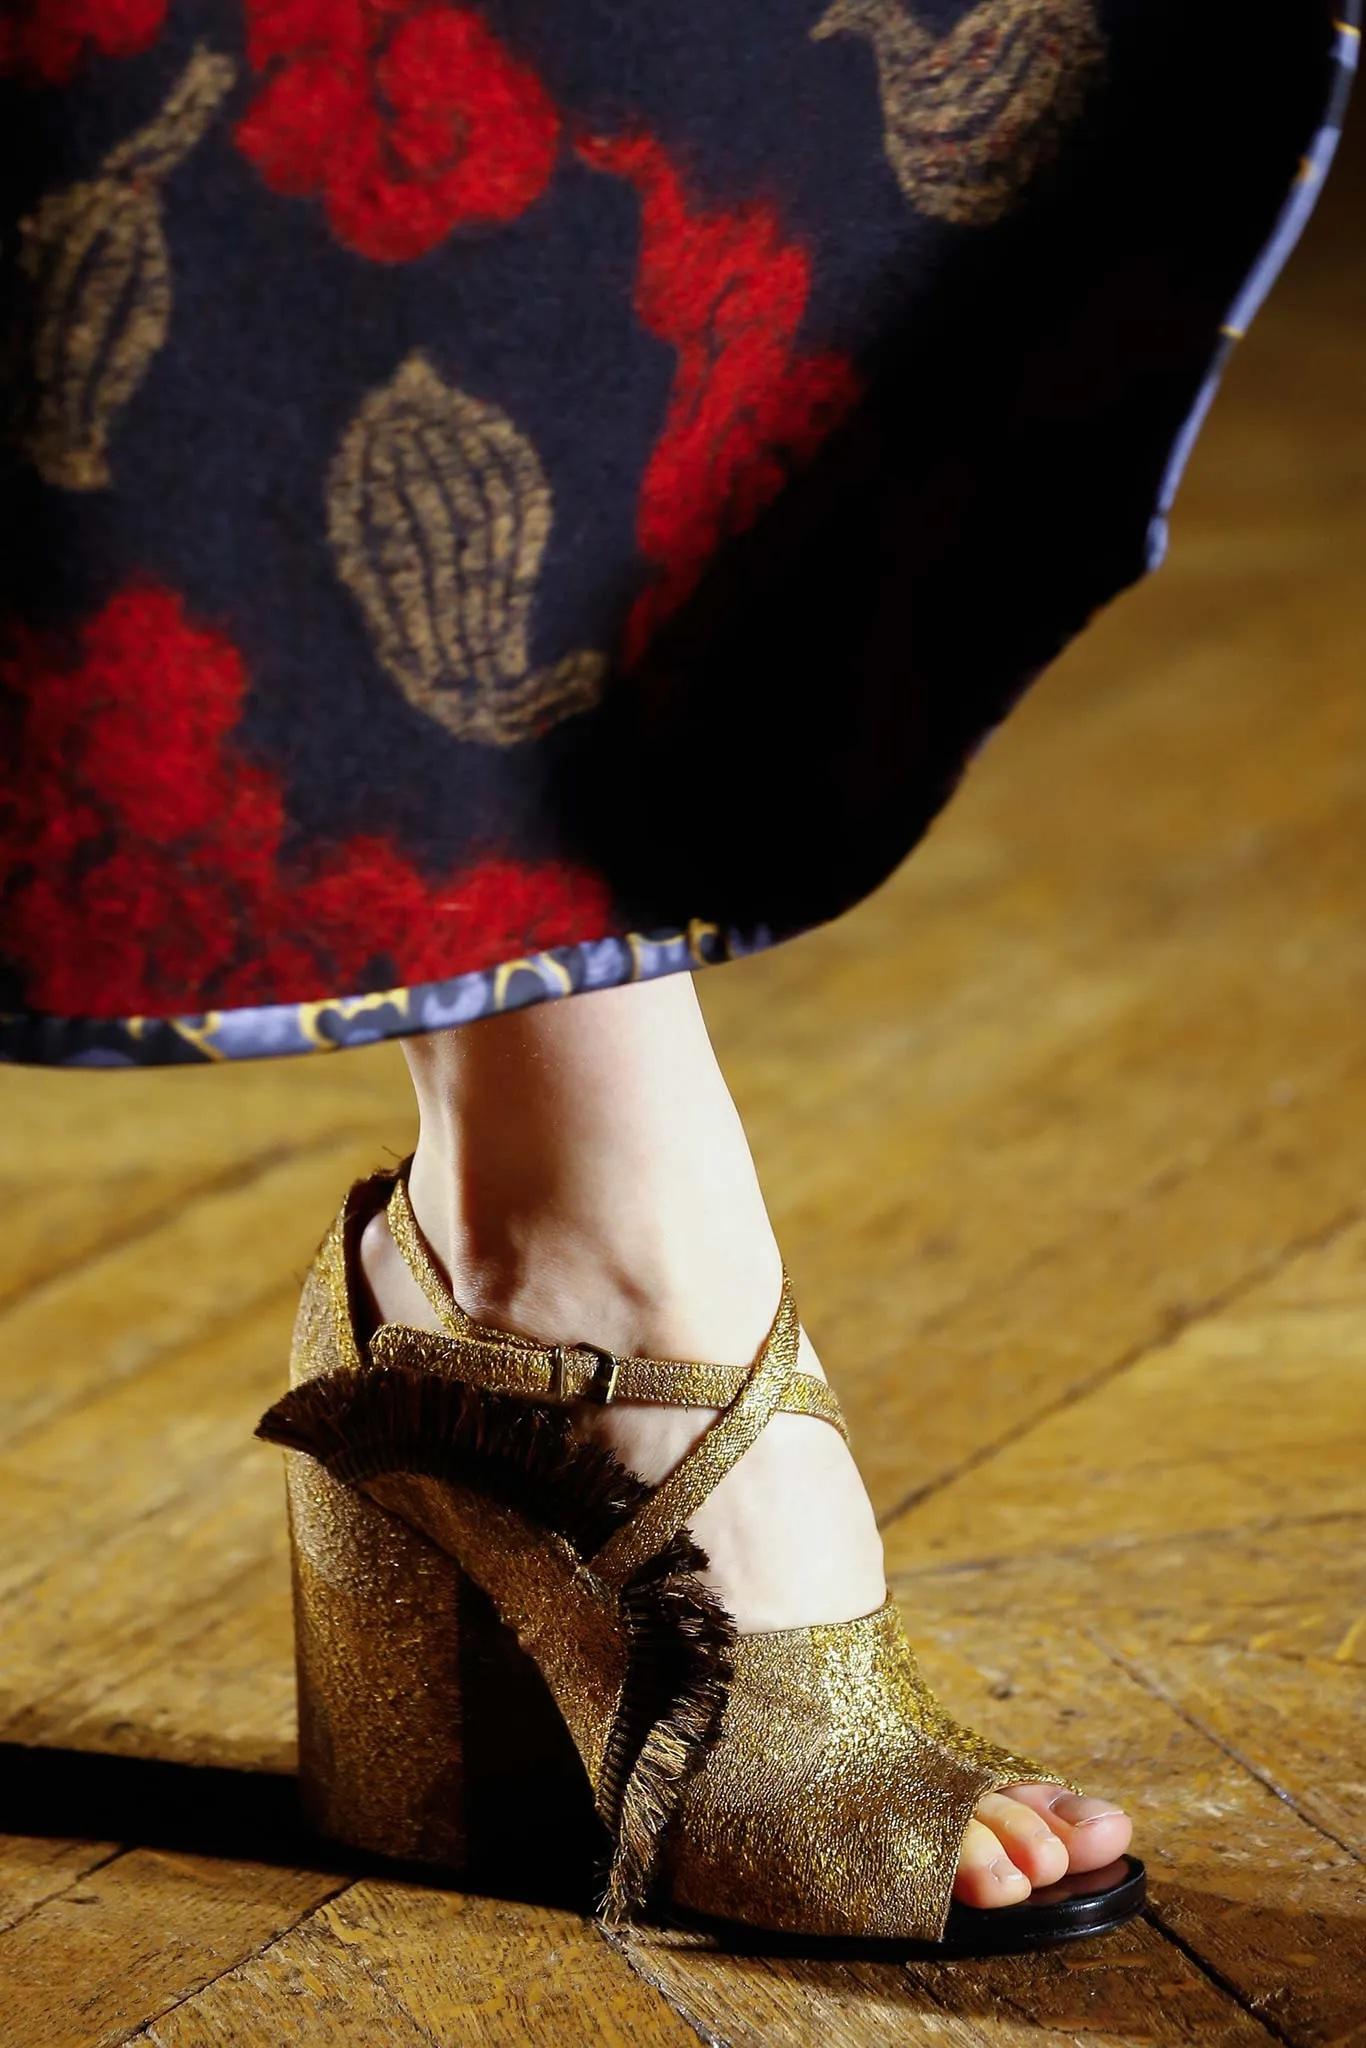 Sandales à talon bloc en brocart doré avec bride cheville de Dries Van Noten, issues de la collection du défilé automne-hiver 2015.

Il est doté d'orteils ouverts arrondis et d'une bride de cheville croisée sur le devant. Franges rayées noires et